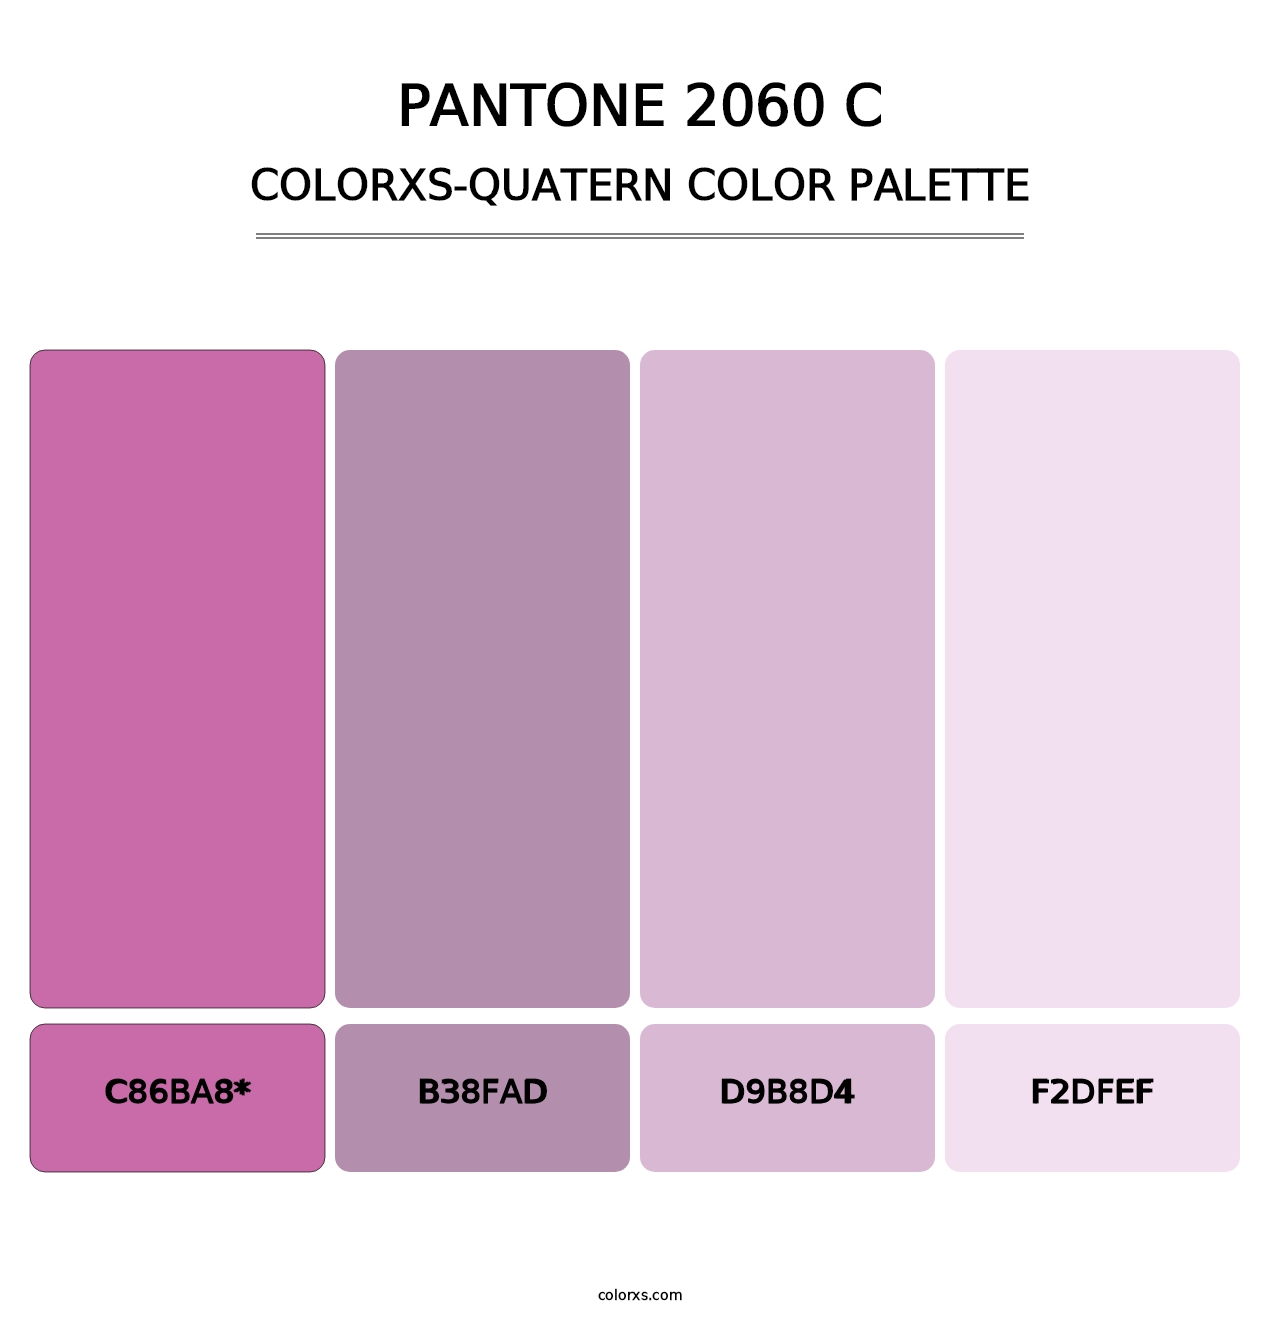 PANTONE 2060 C - Colorxs Quad Palette